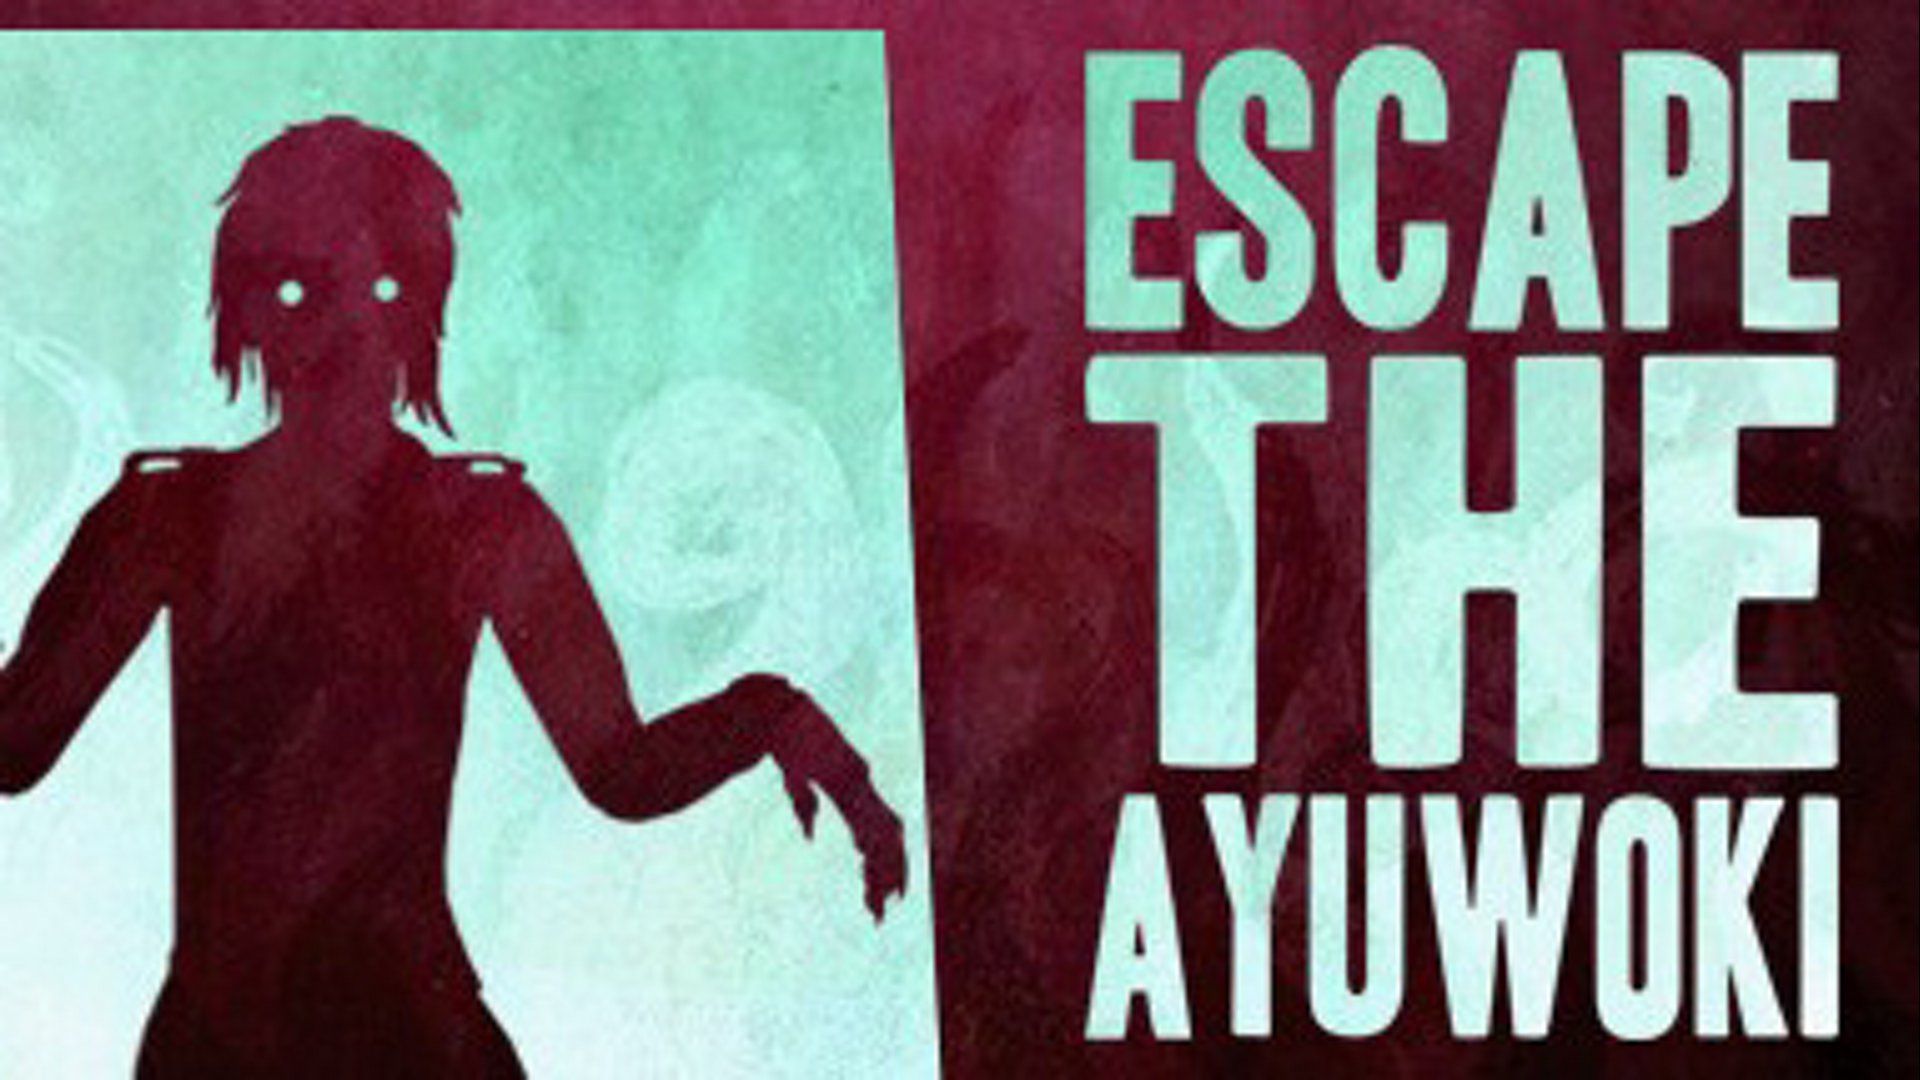 escape the ayuwoki game download